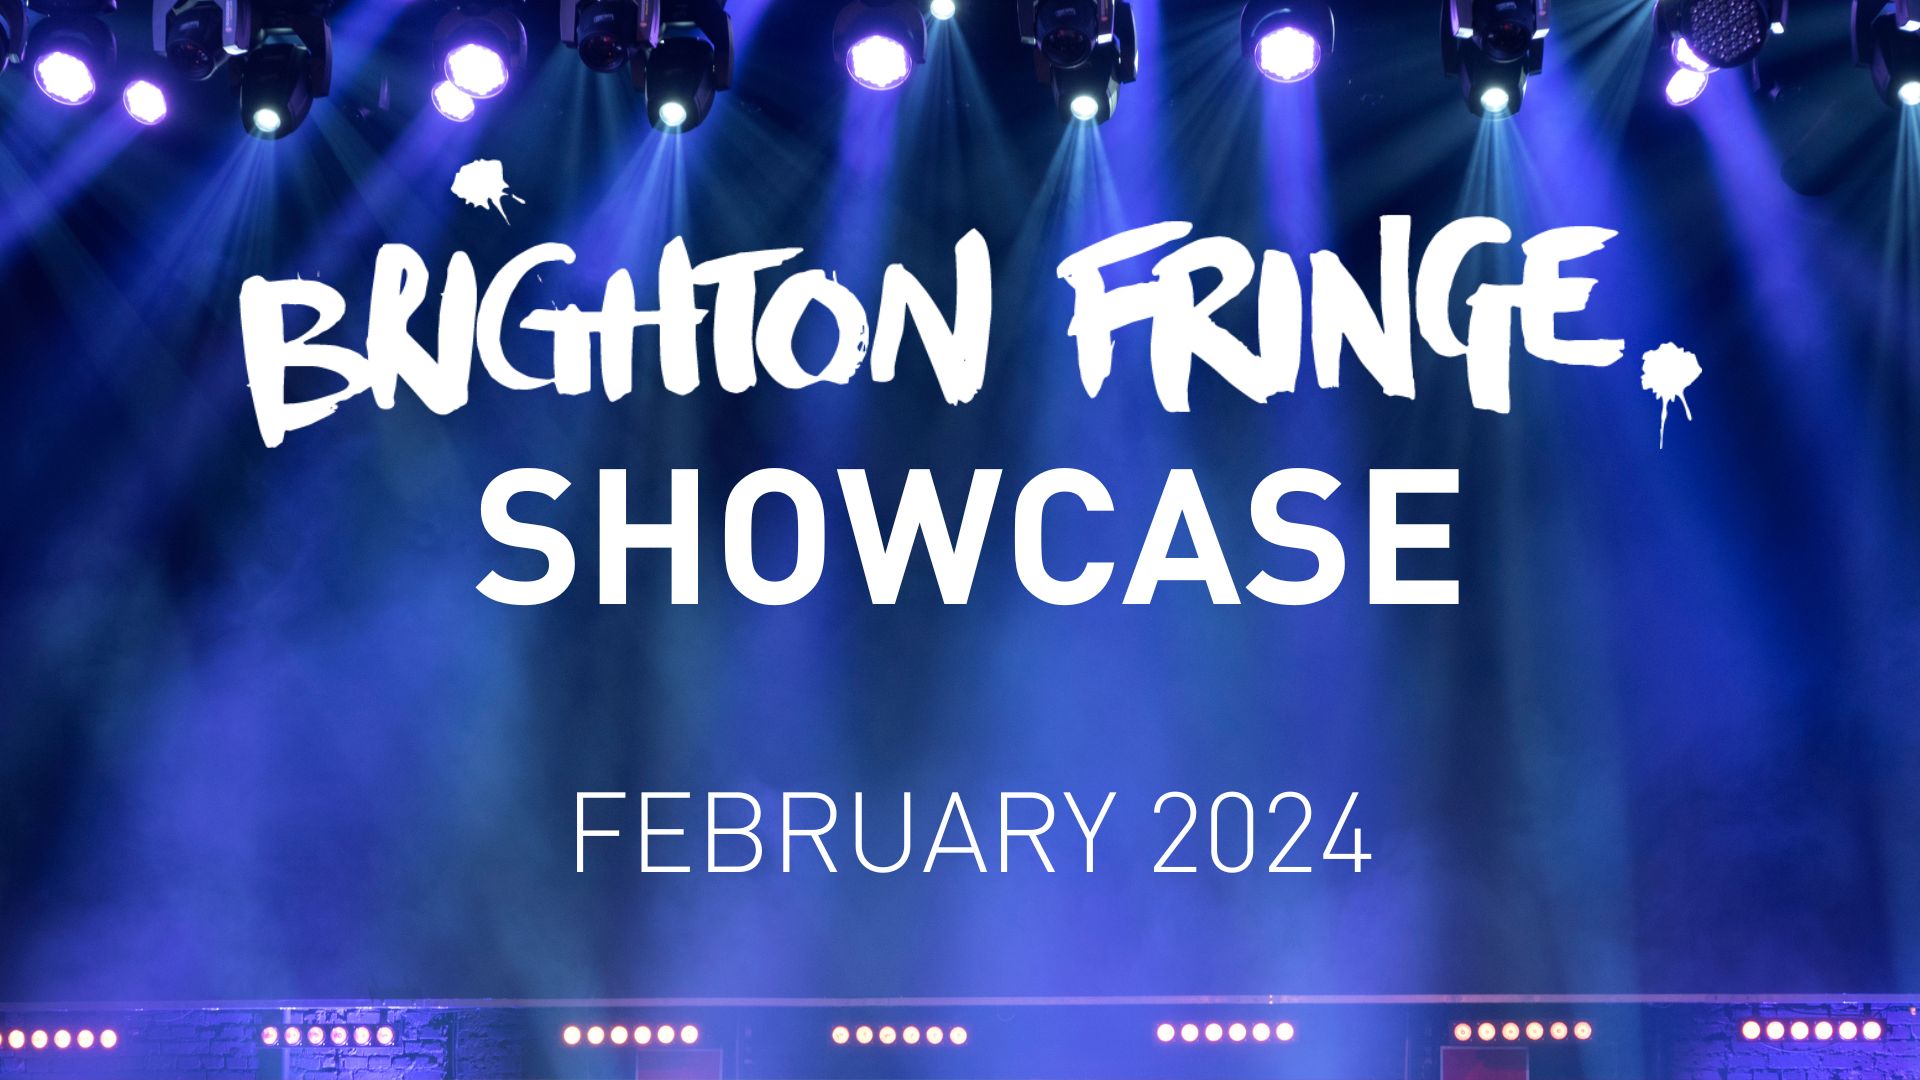 Brighton Fringe Showcase